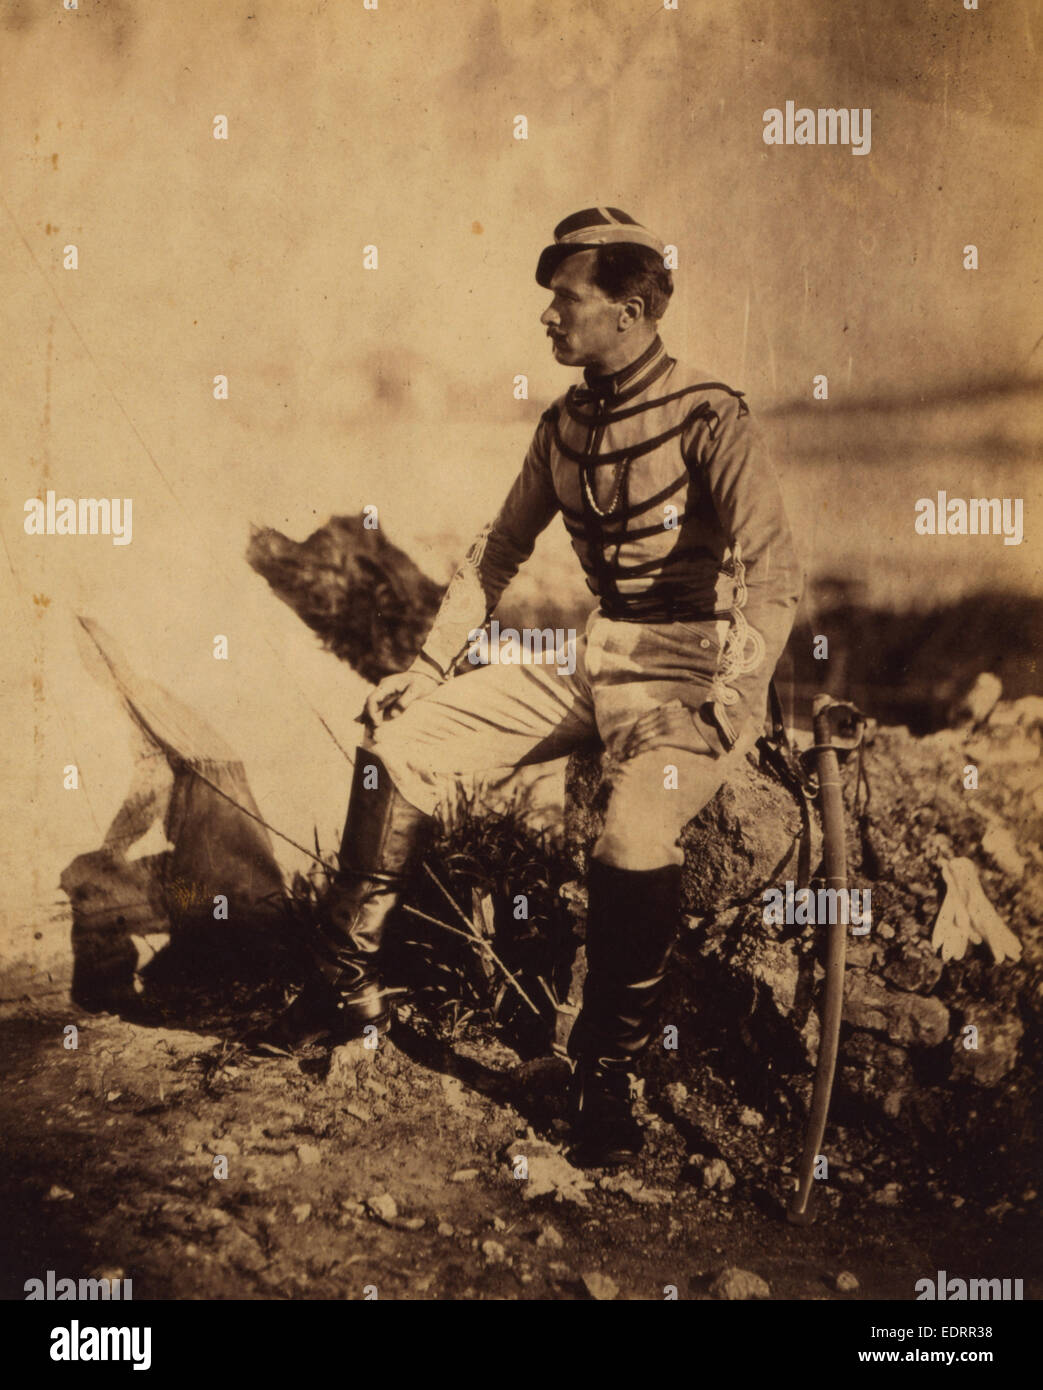 Kapitän Thomas, Adjutant von General Bosquet, Krimkrieg 1853 – 1856, Roger Fenton historischen Krieg Kampagne Foto Stockfoto